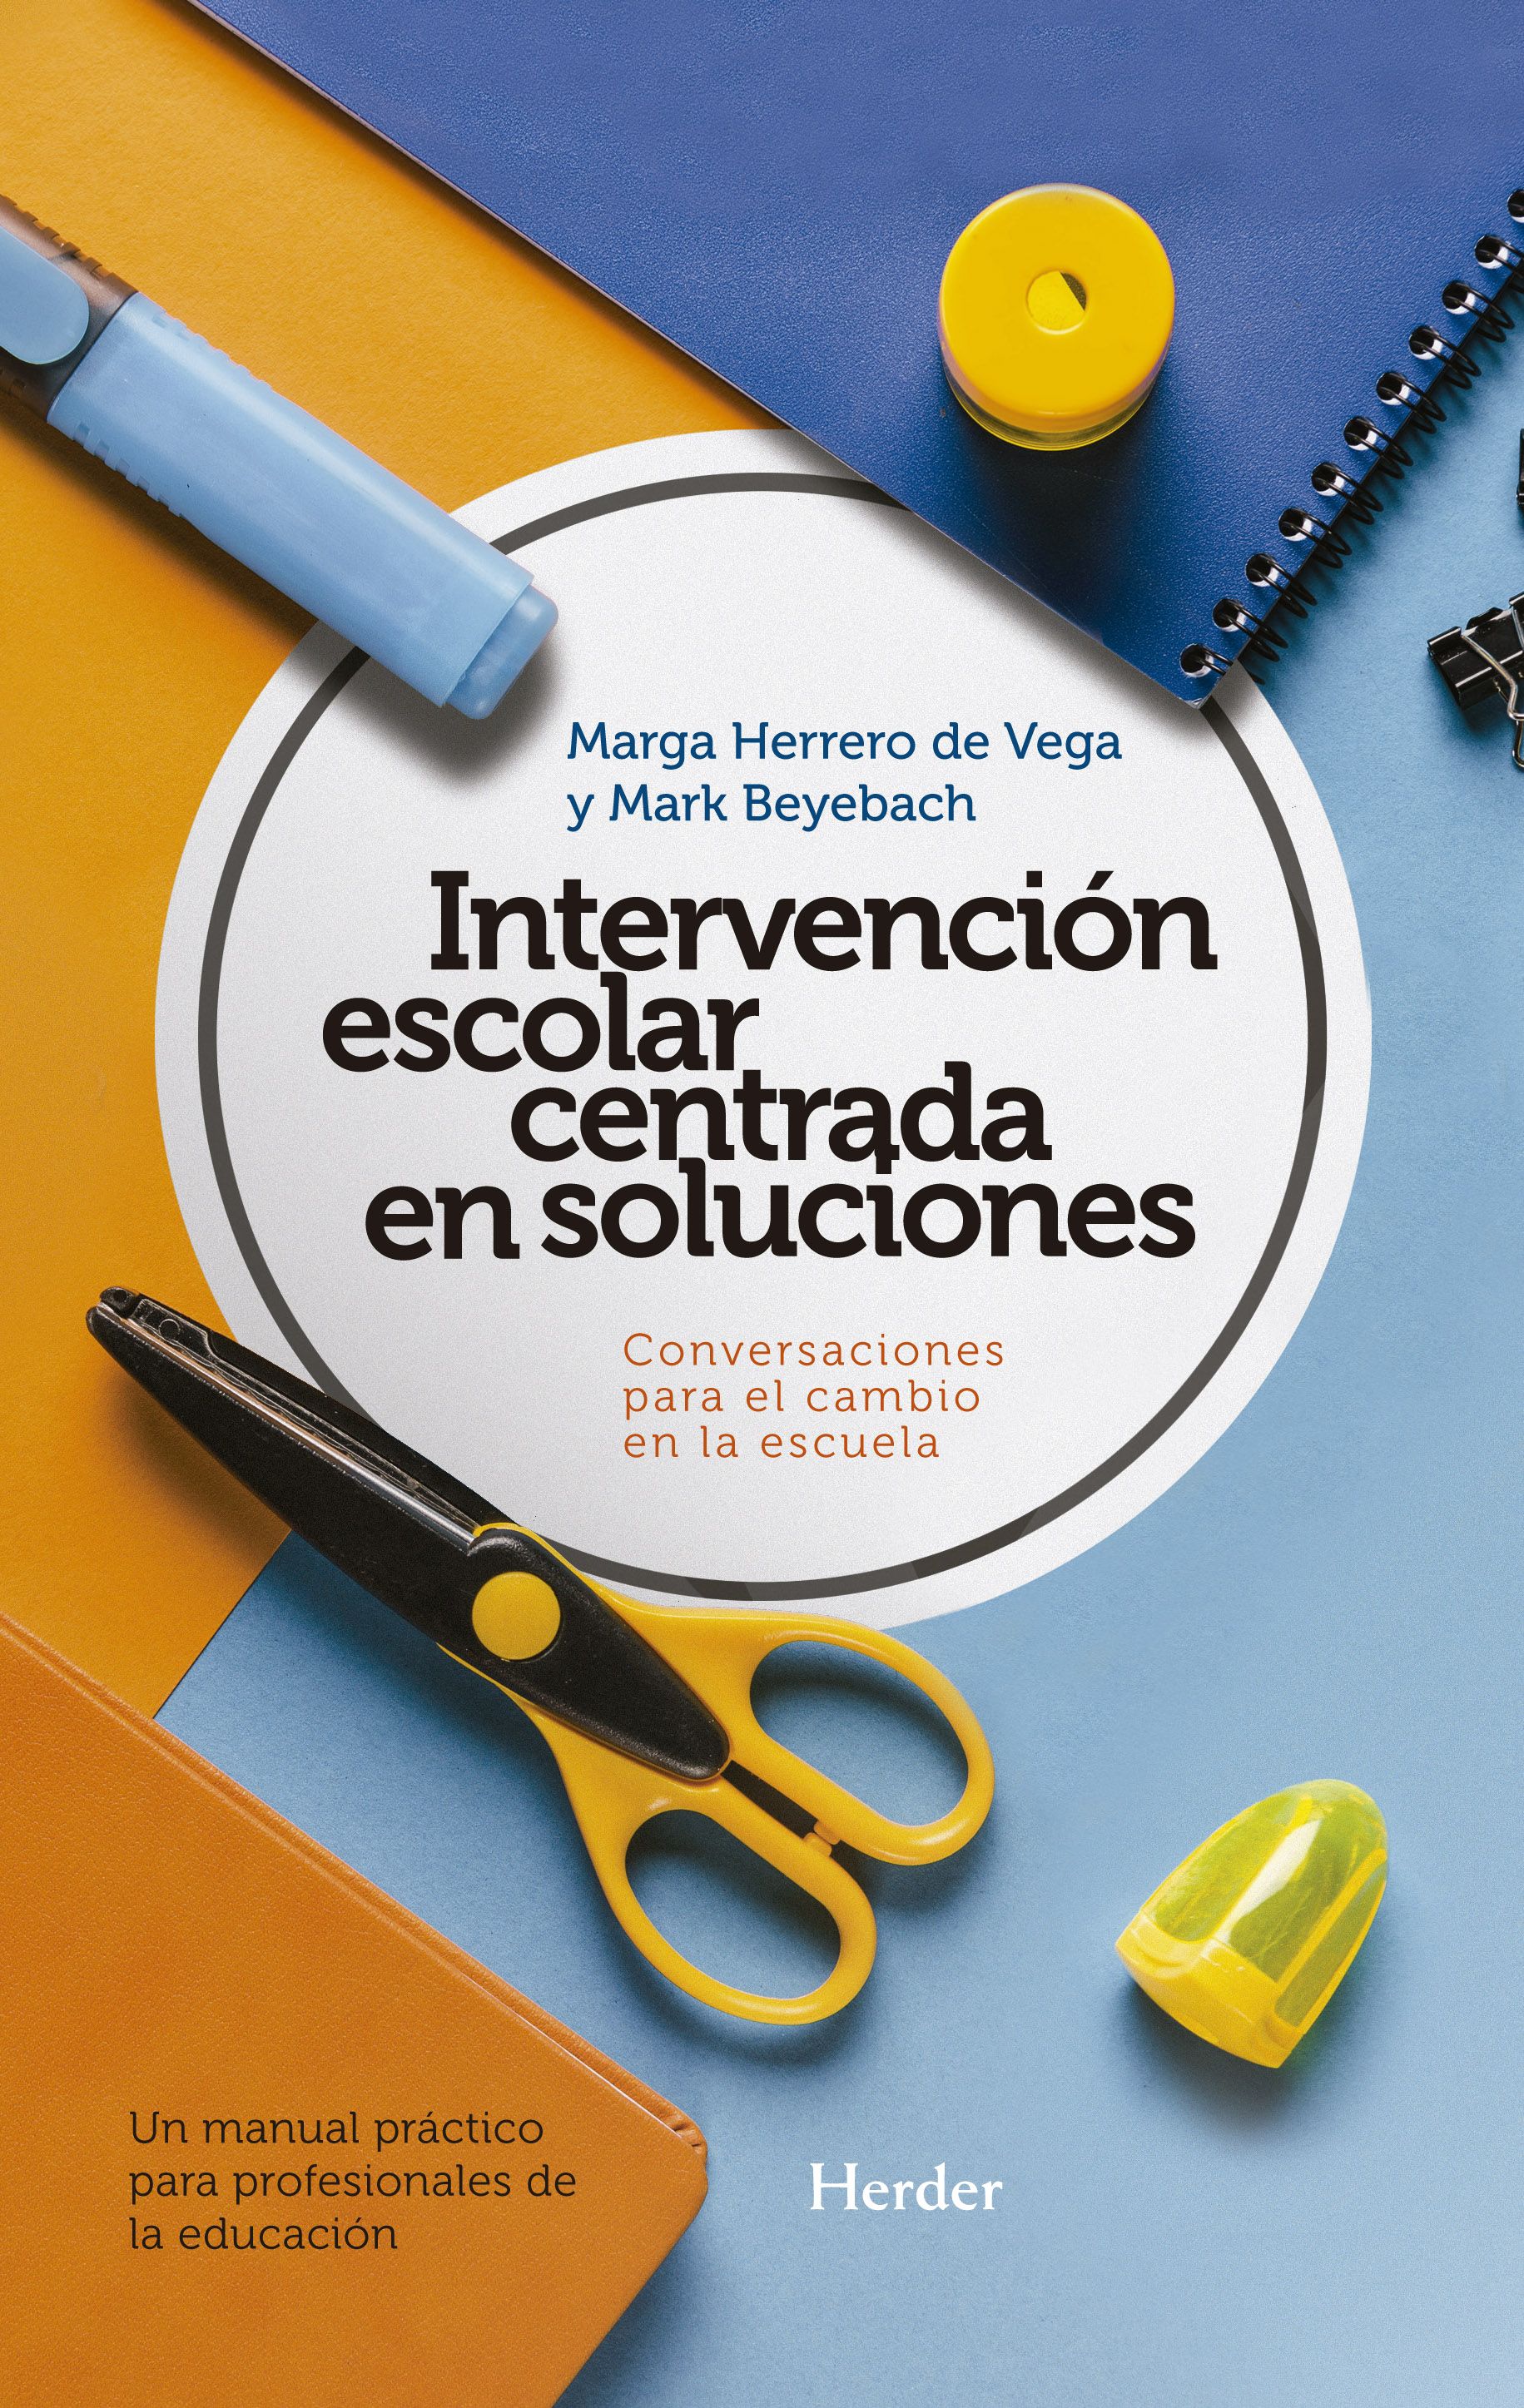 Intervención escolar centrada en soluciones: conversaciones para el cambio  en la escuela.. Un manual práctico para profesionales de la educación